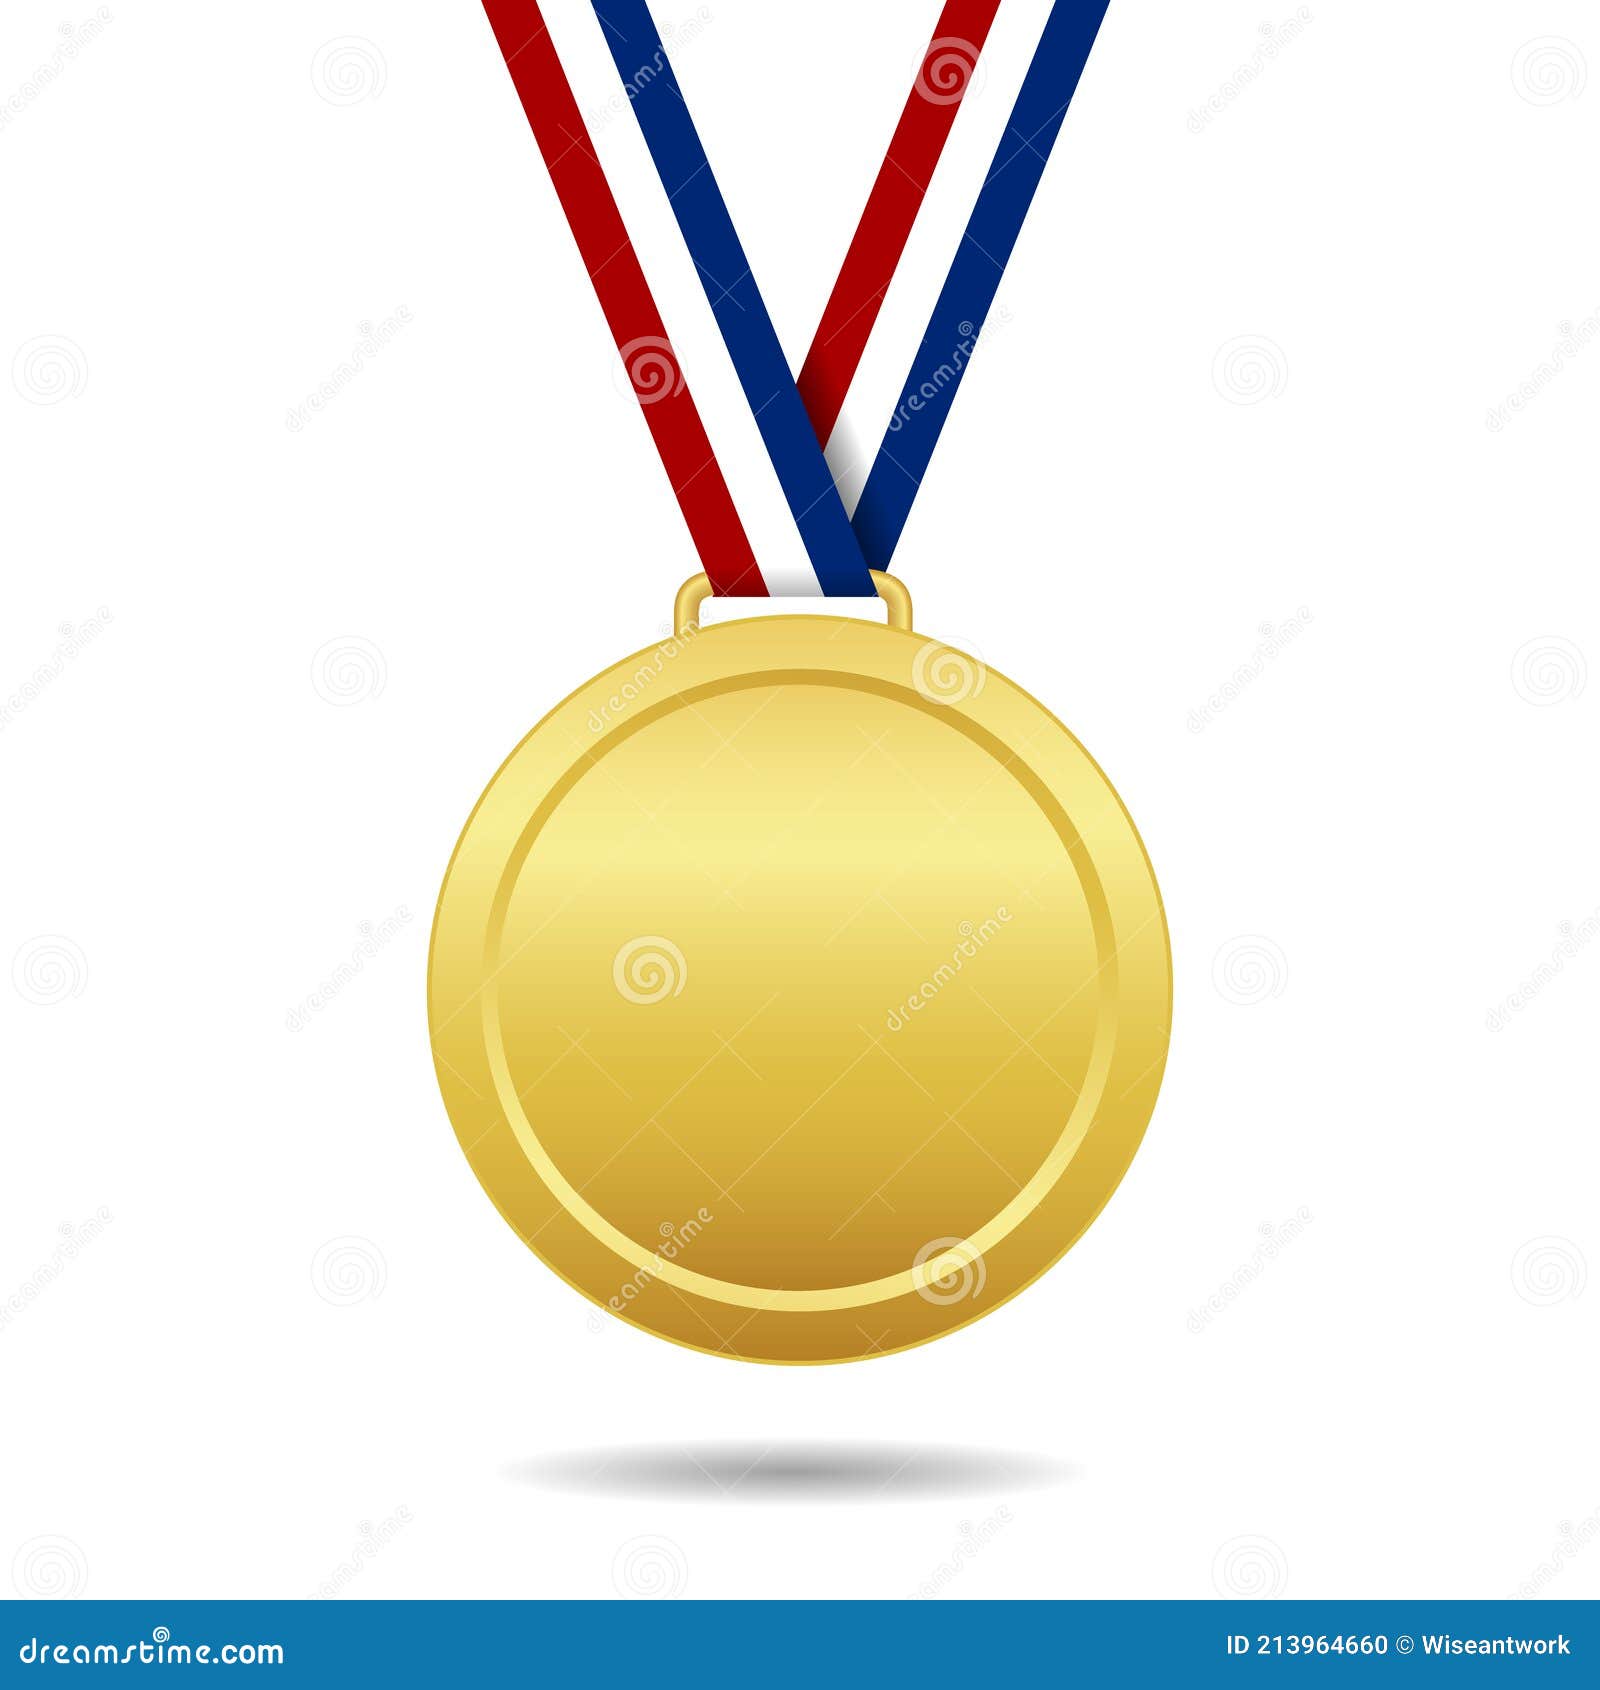 https://thumbs.dreamstime.com/z/medalla-de-oro-con-lazo-trofeo-del-ganador-premio-por-plaza-campeonato-aislada-sobre-fondo-blanco-medall%C3%B3n-cinta-para-campe%C3%B3n-213964660.jpg